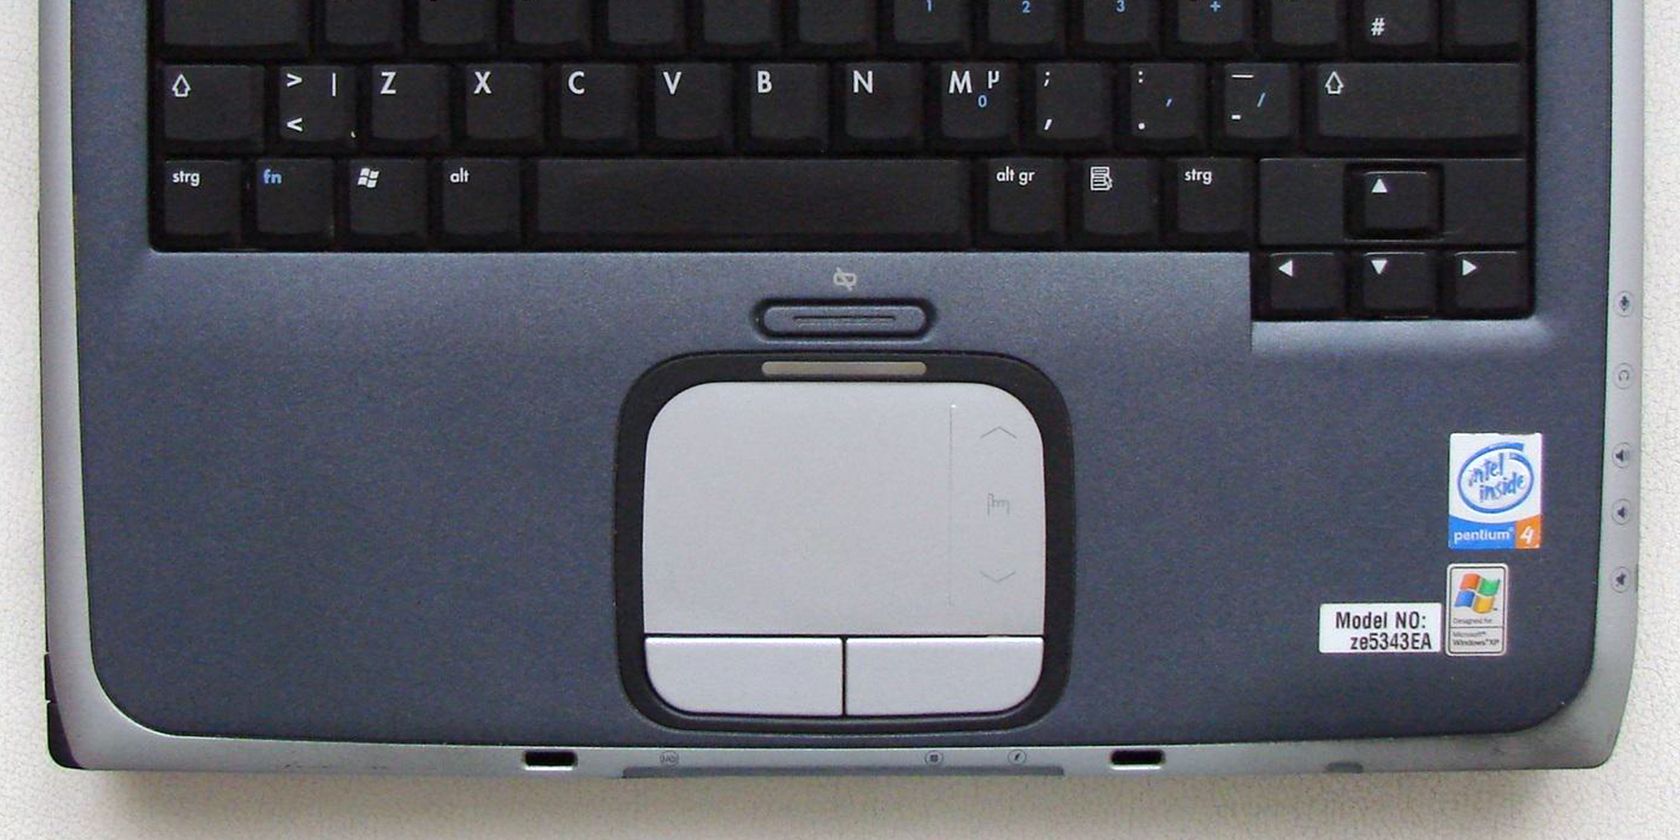 یک لپ تاپ مجهز به پنتیوم 4 اینتل با ویندوز XP